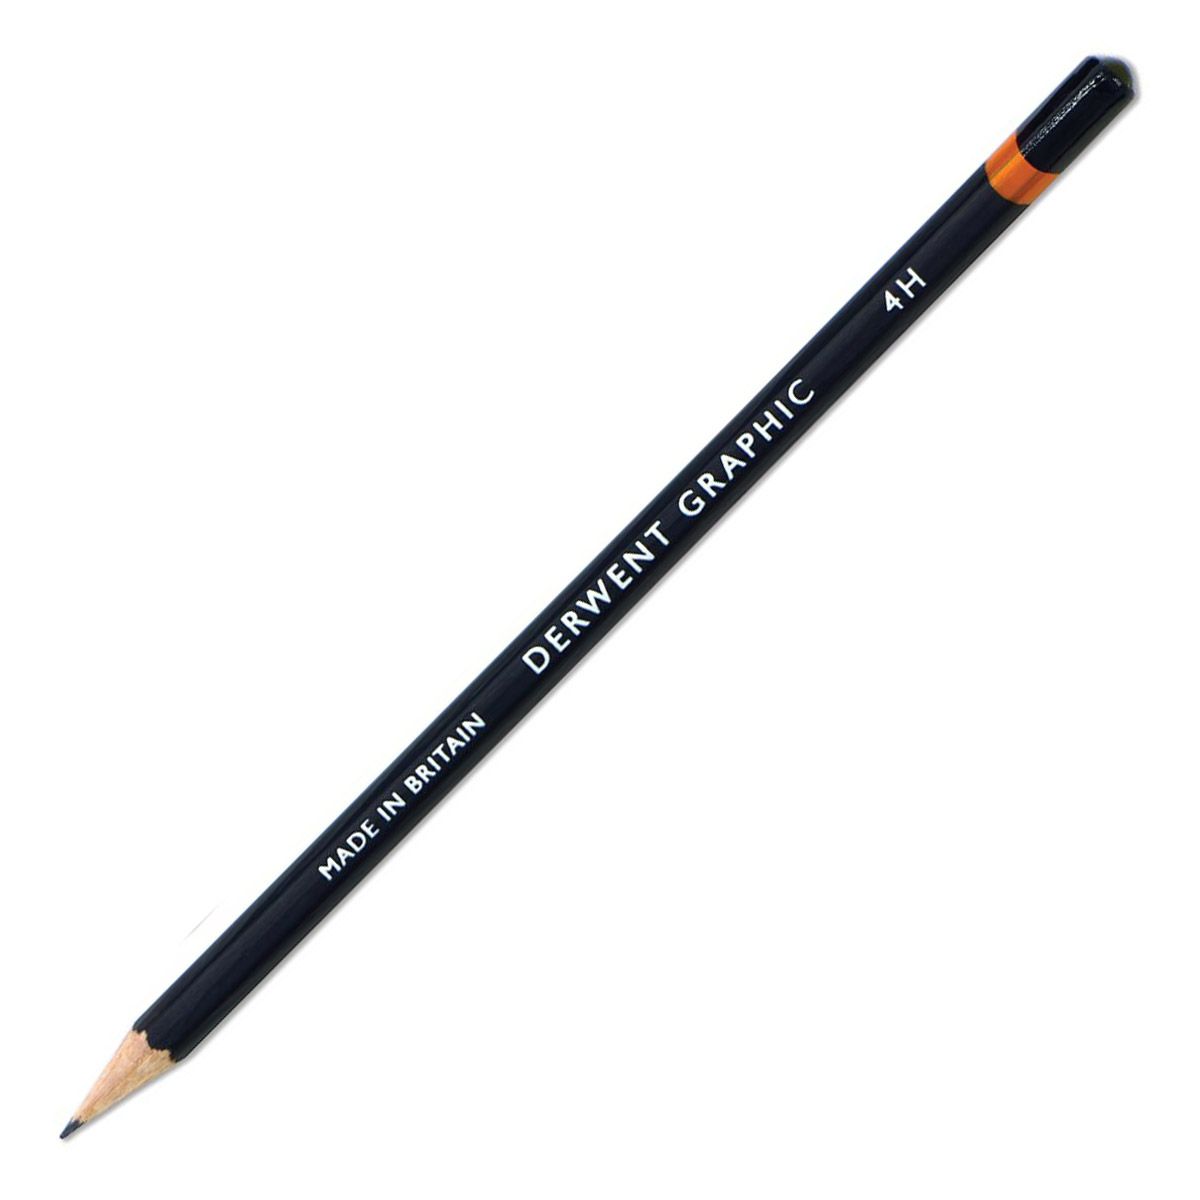 Derwent Graphic Pencil - 4H